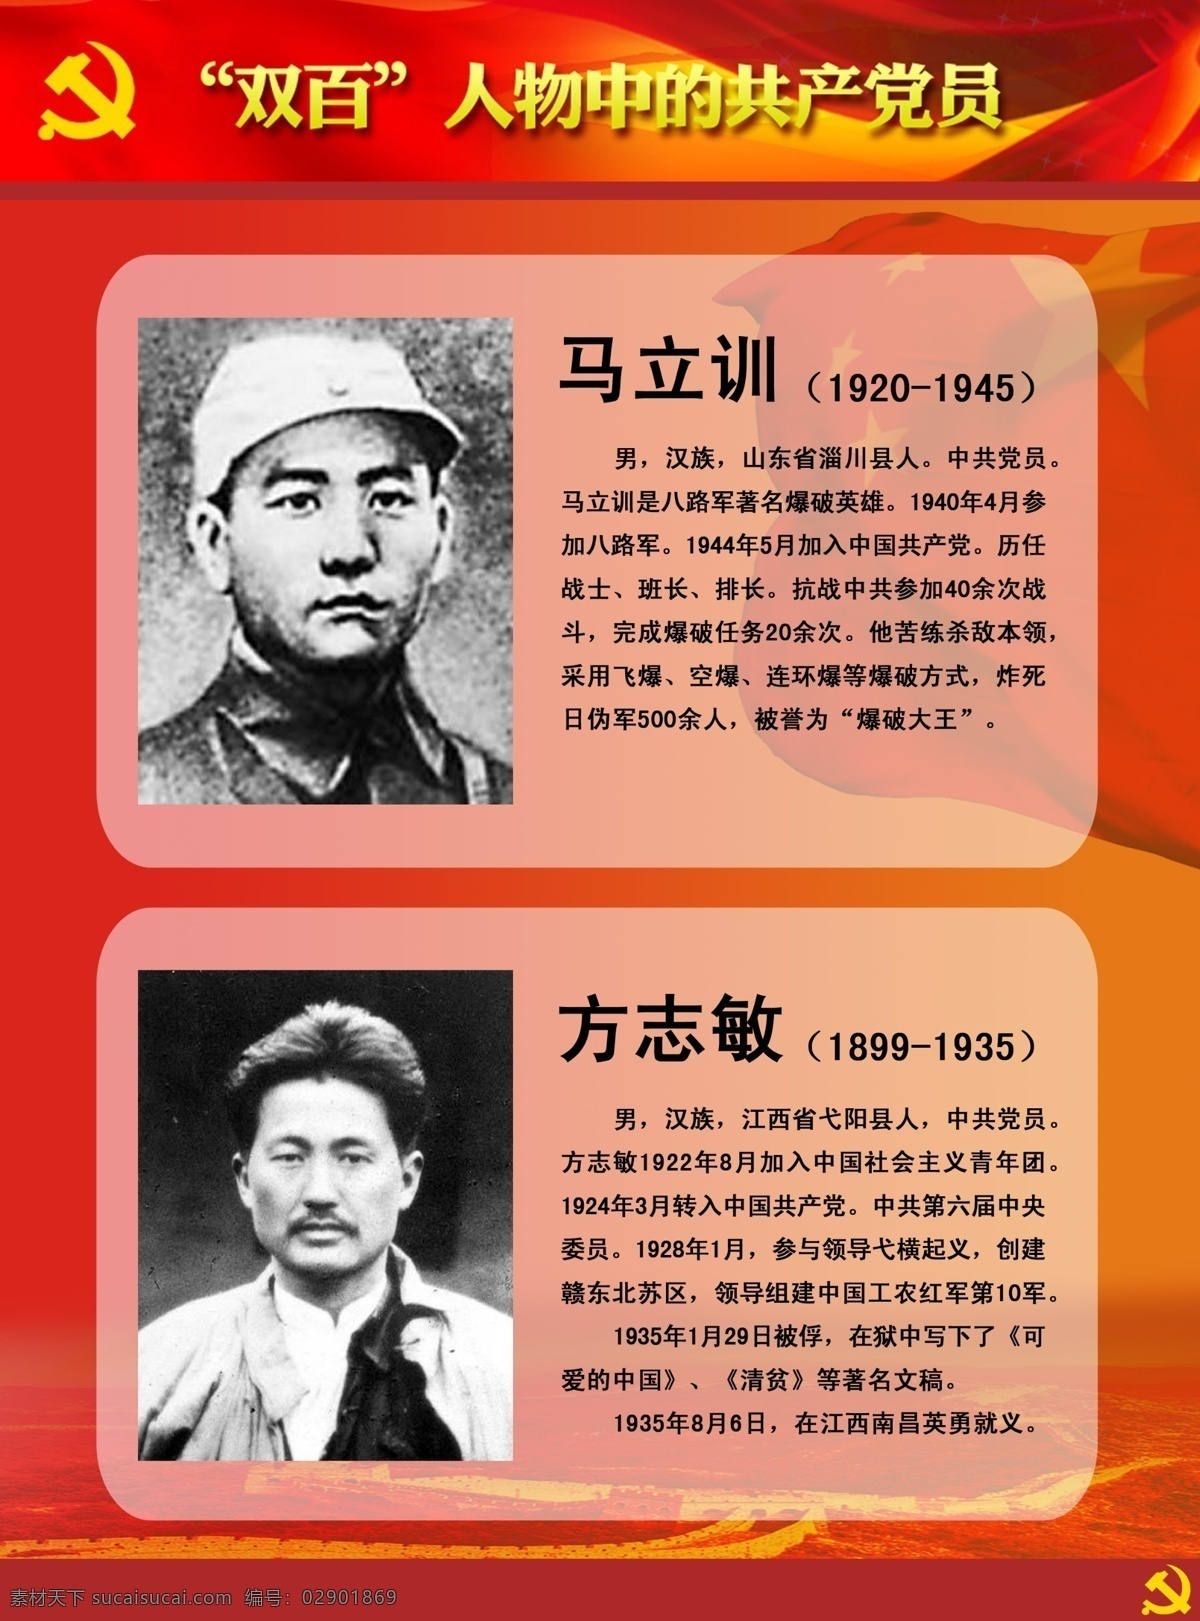 双百人物展板 双百 人物 中 共产党员 马立训 方志敏 英雄人物 牺牲 英雄 展板模板 广告设计模板 源文件